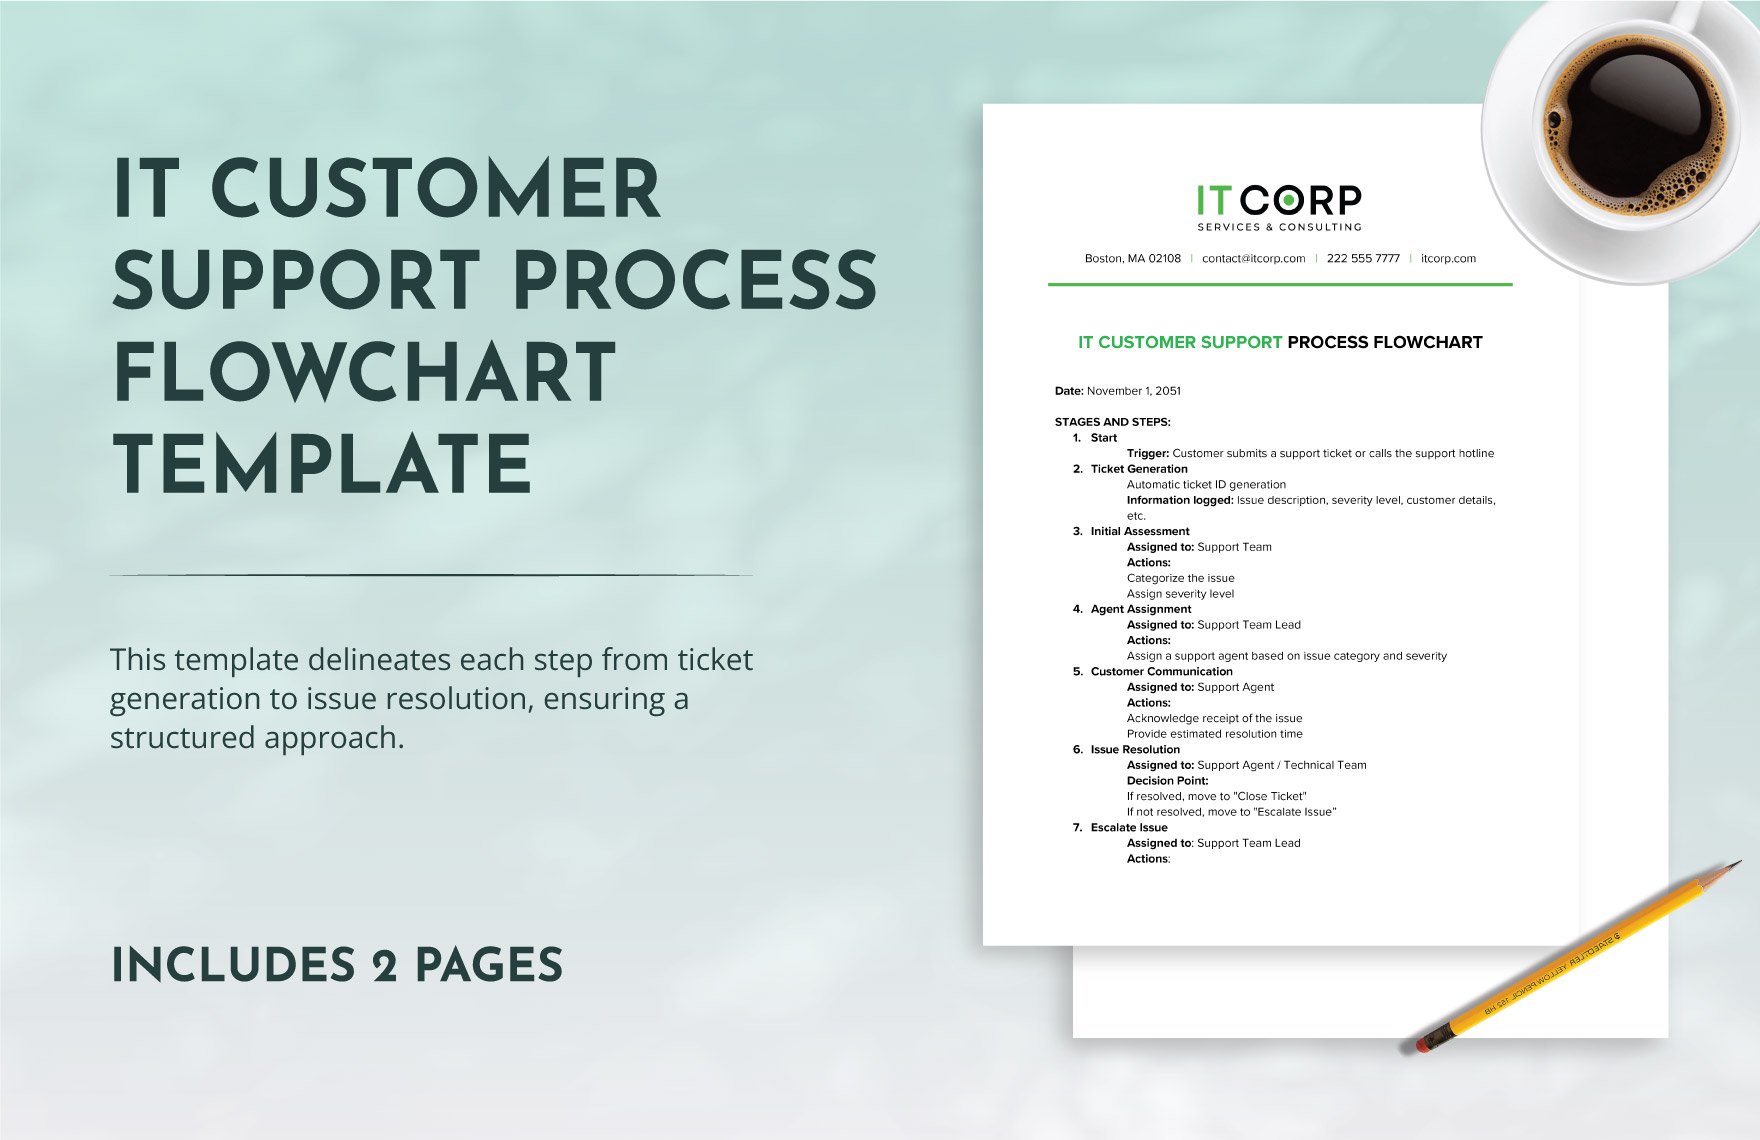 IT Customer Support Process Flowchart Template